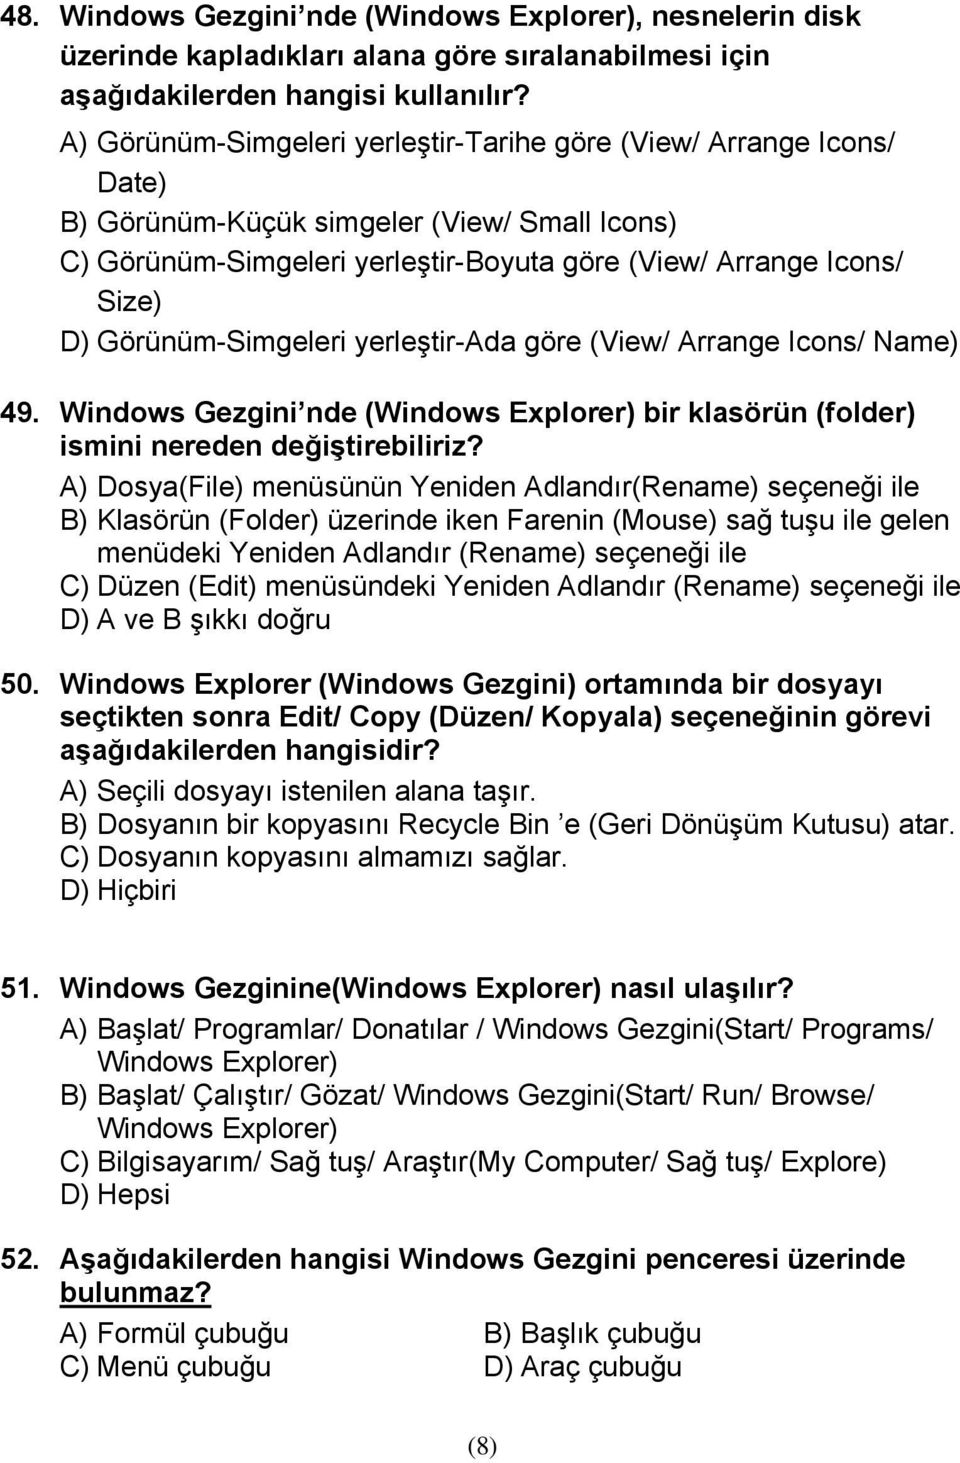 Görünüm-Simgeleri yerleştir-ada göre (View/ Arrange Icons/ Name) 49. Windows Gezgini nde (Windows Explorer) bir klasörün (folder) ismini nereden değiştirebiliriz?